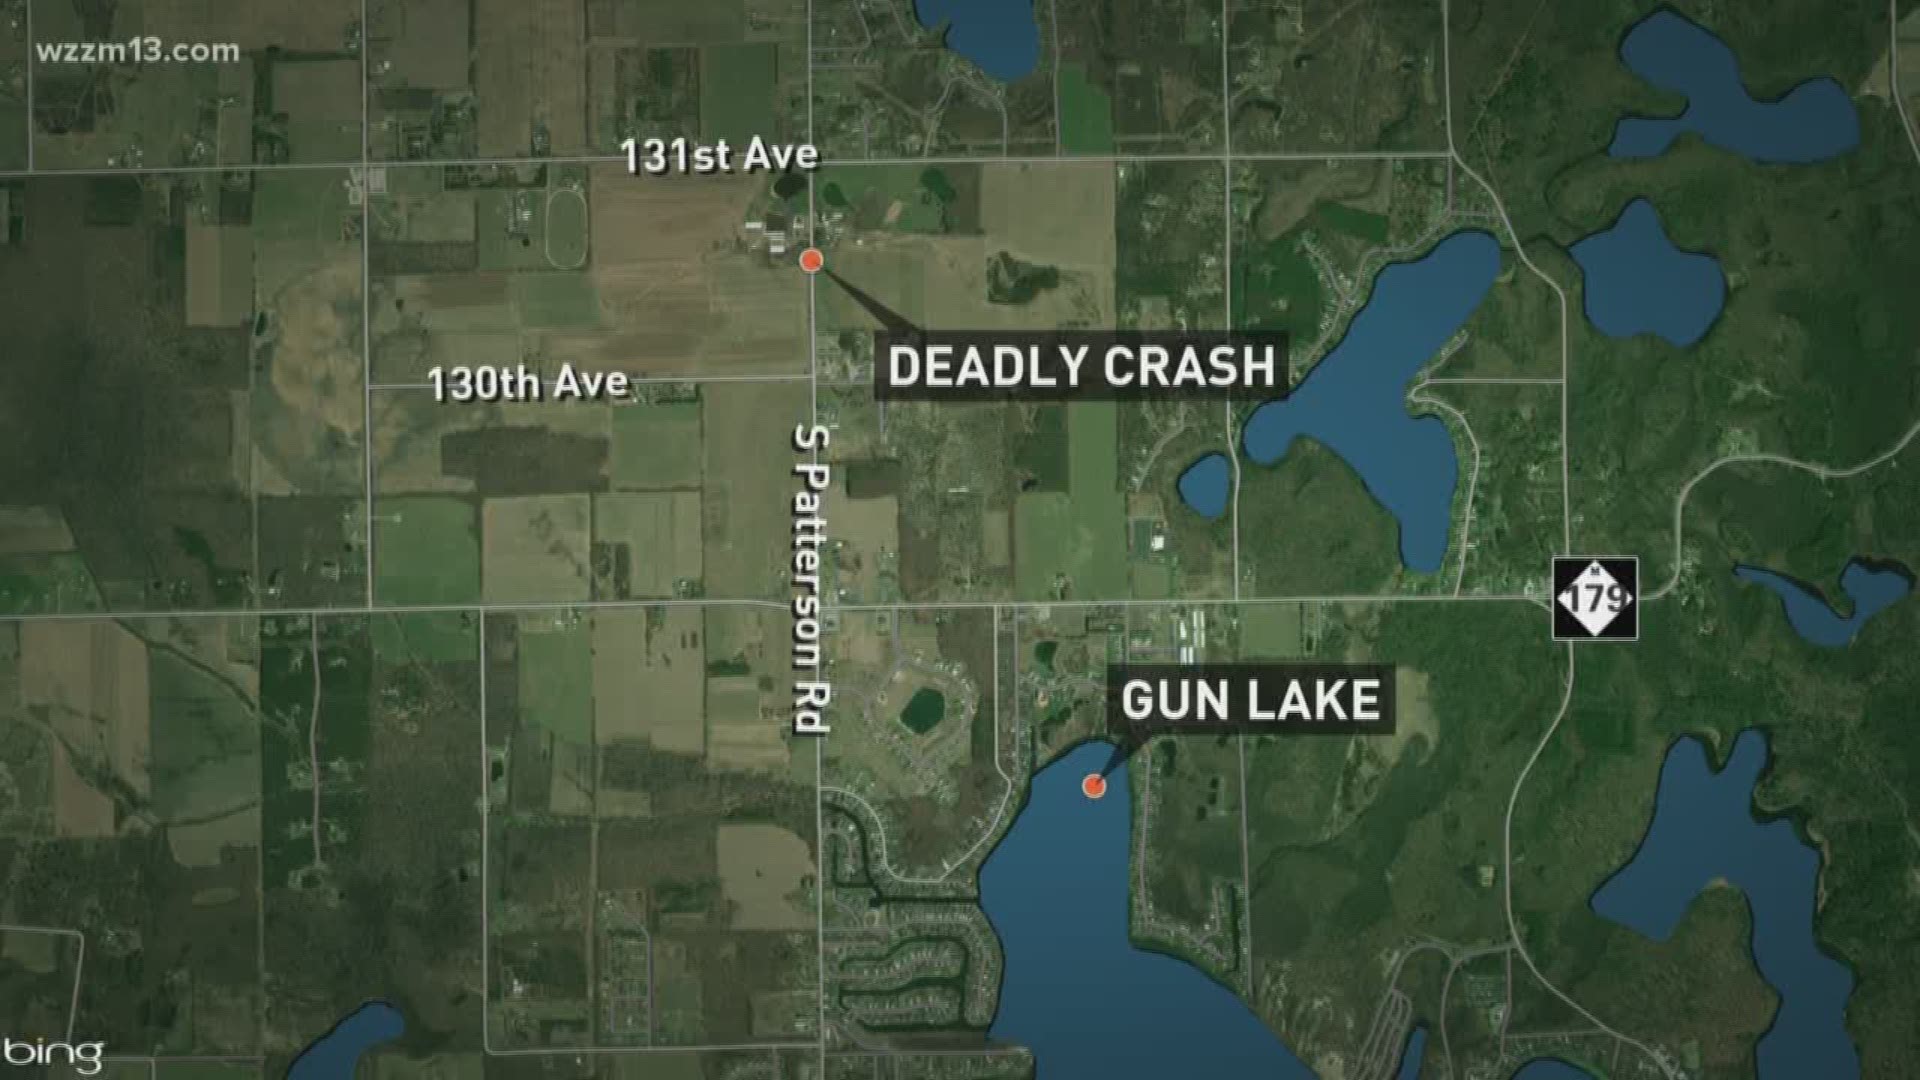 Deadly crash in Allegan County